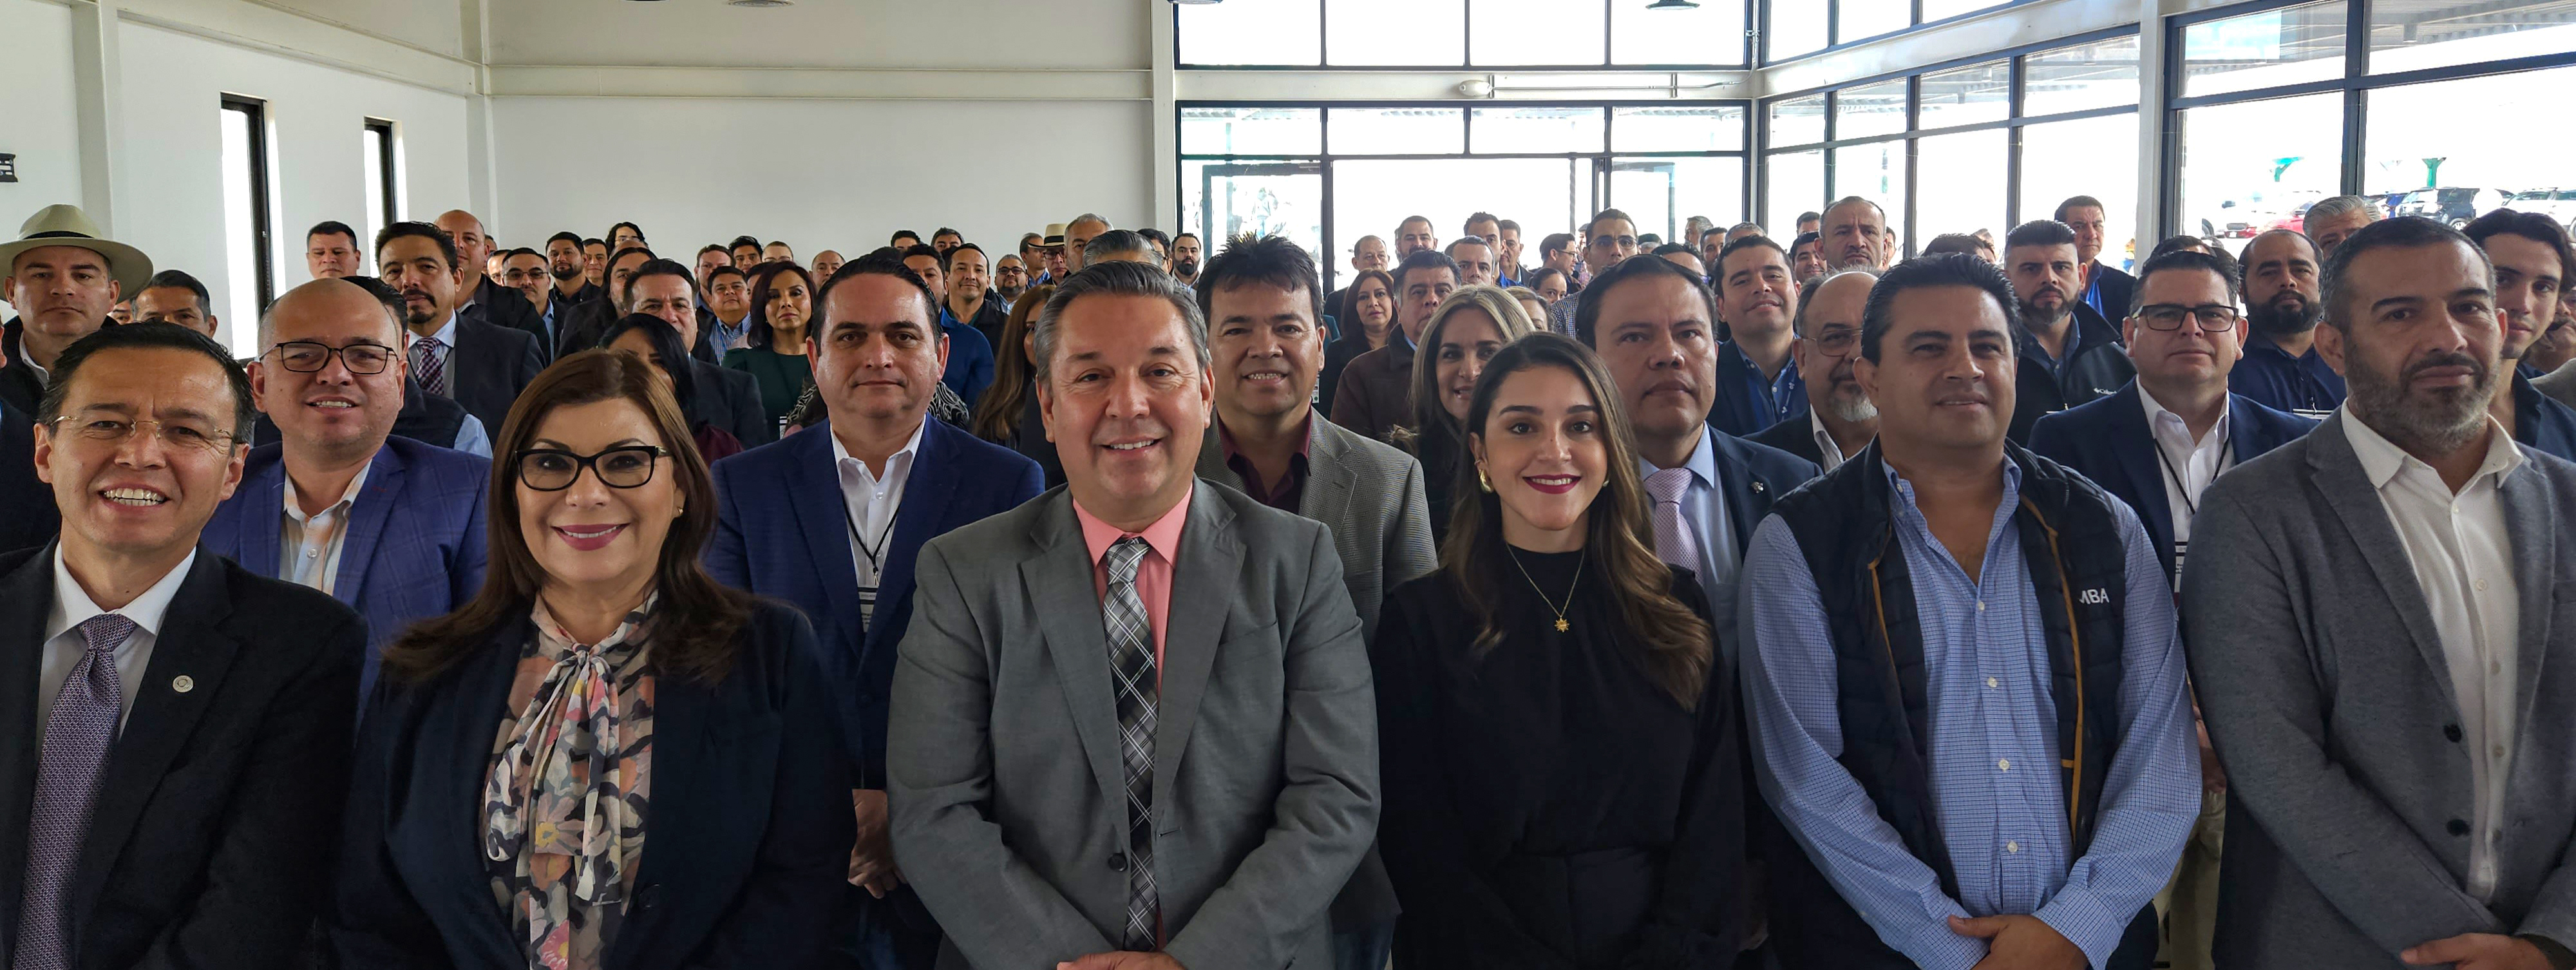 El objetivo, impulsar a México en materia tecnológica y generar el talento necesario para las empresas